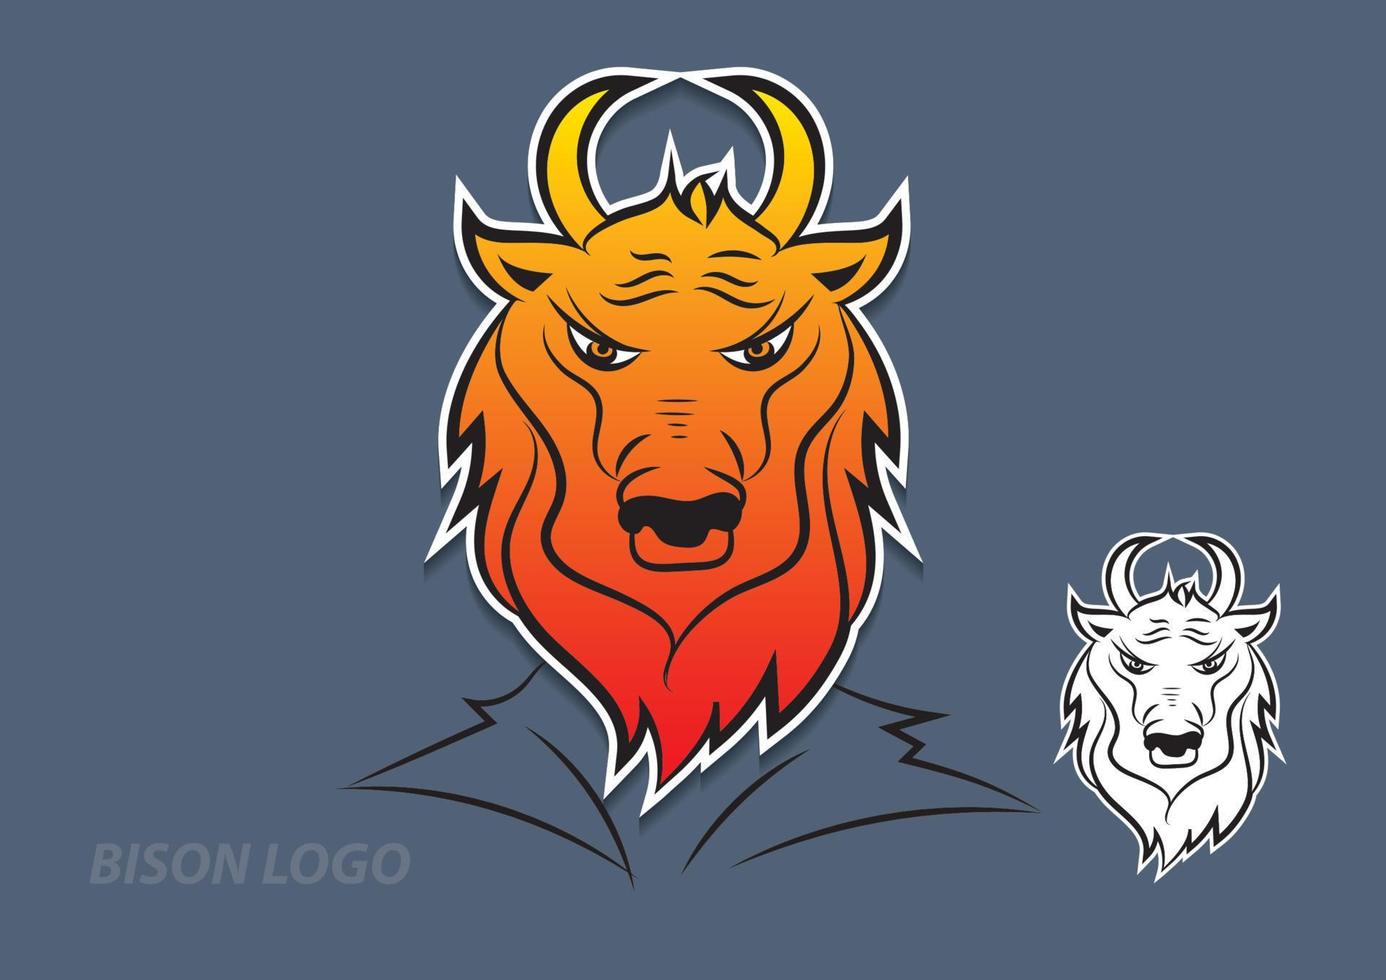 diseño de vectores de logotipo de bisonte, signo, ilustración de vector de icono animal para empresa, dibujos animados de vaca